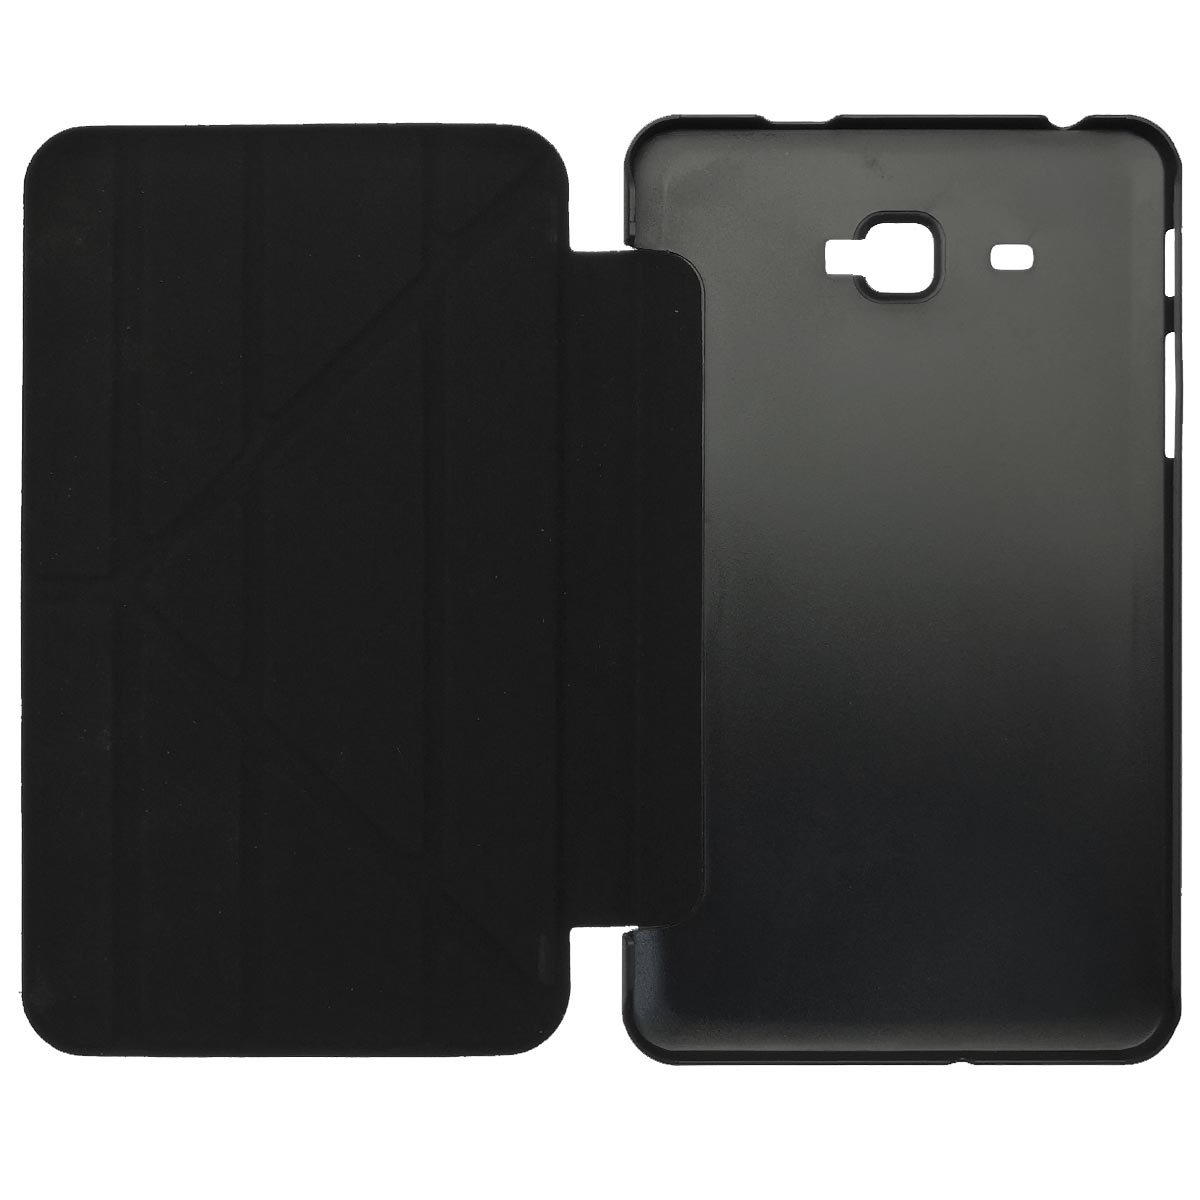 Чехол книжка iRidium для планшета SAMSUNG Galaxy Tab A 7.0 (SM-T280, SM-T285), экокожа, цвет черный